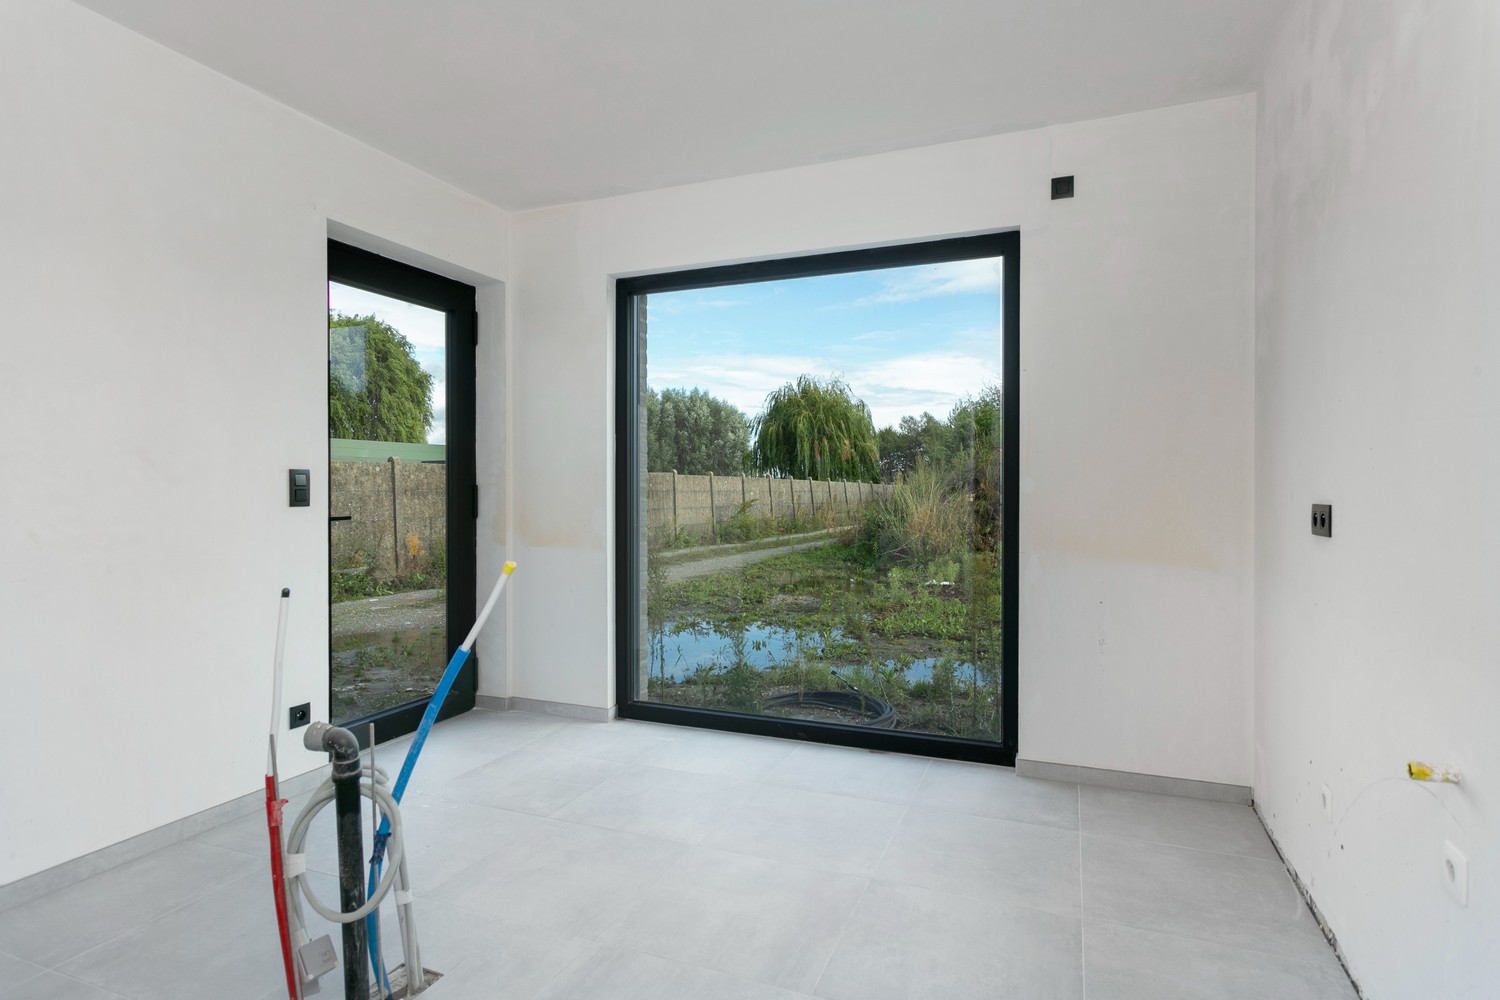 Gloednieuwe, energiezuinige woning met 3 slaapkamers & zonnige tuin in Koningshooikt! afbeelding 5